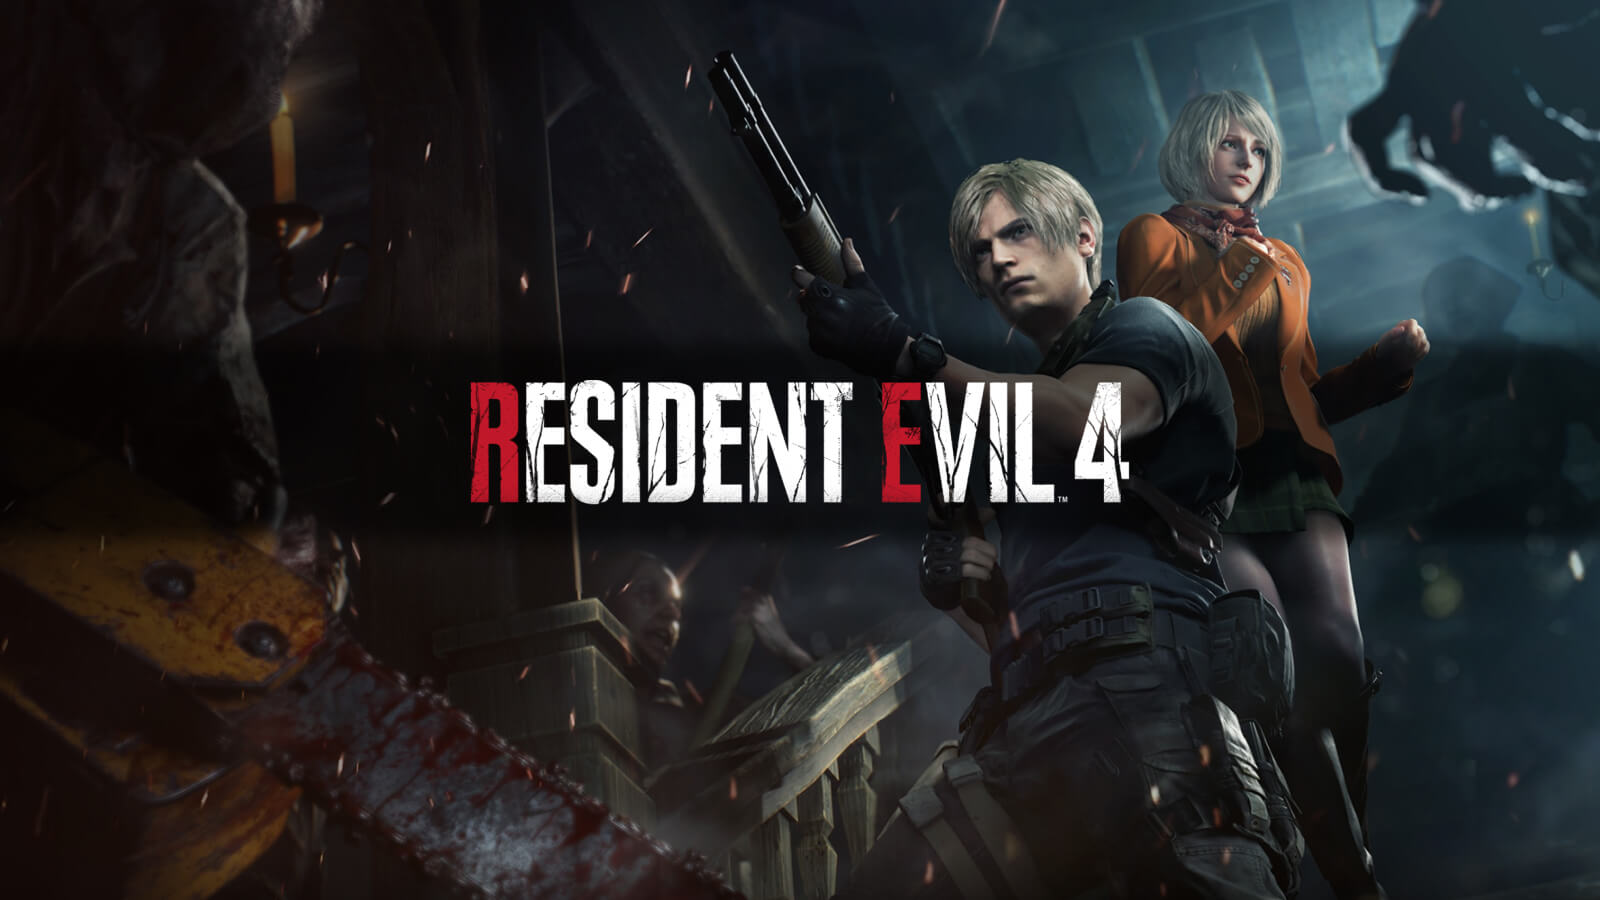 Requisitos mínimos e recomendados para RODAR de Resident Evil 3 REMAKE